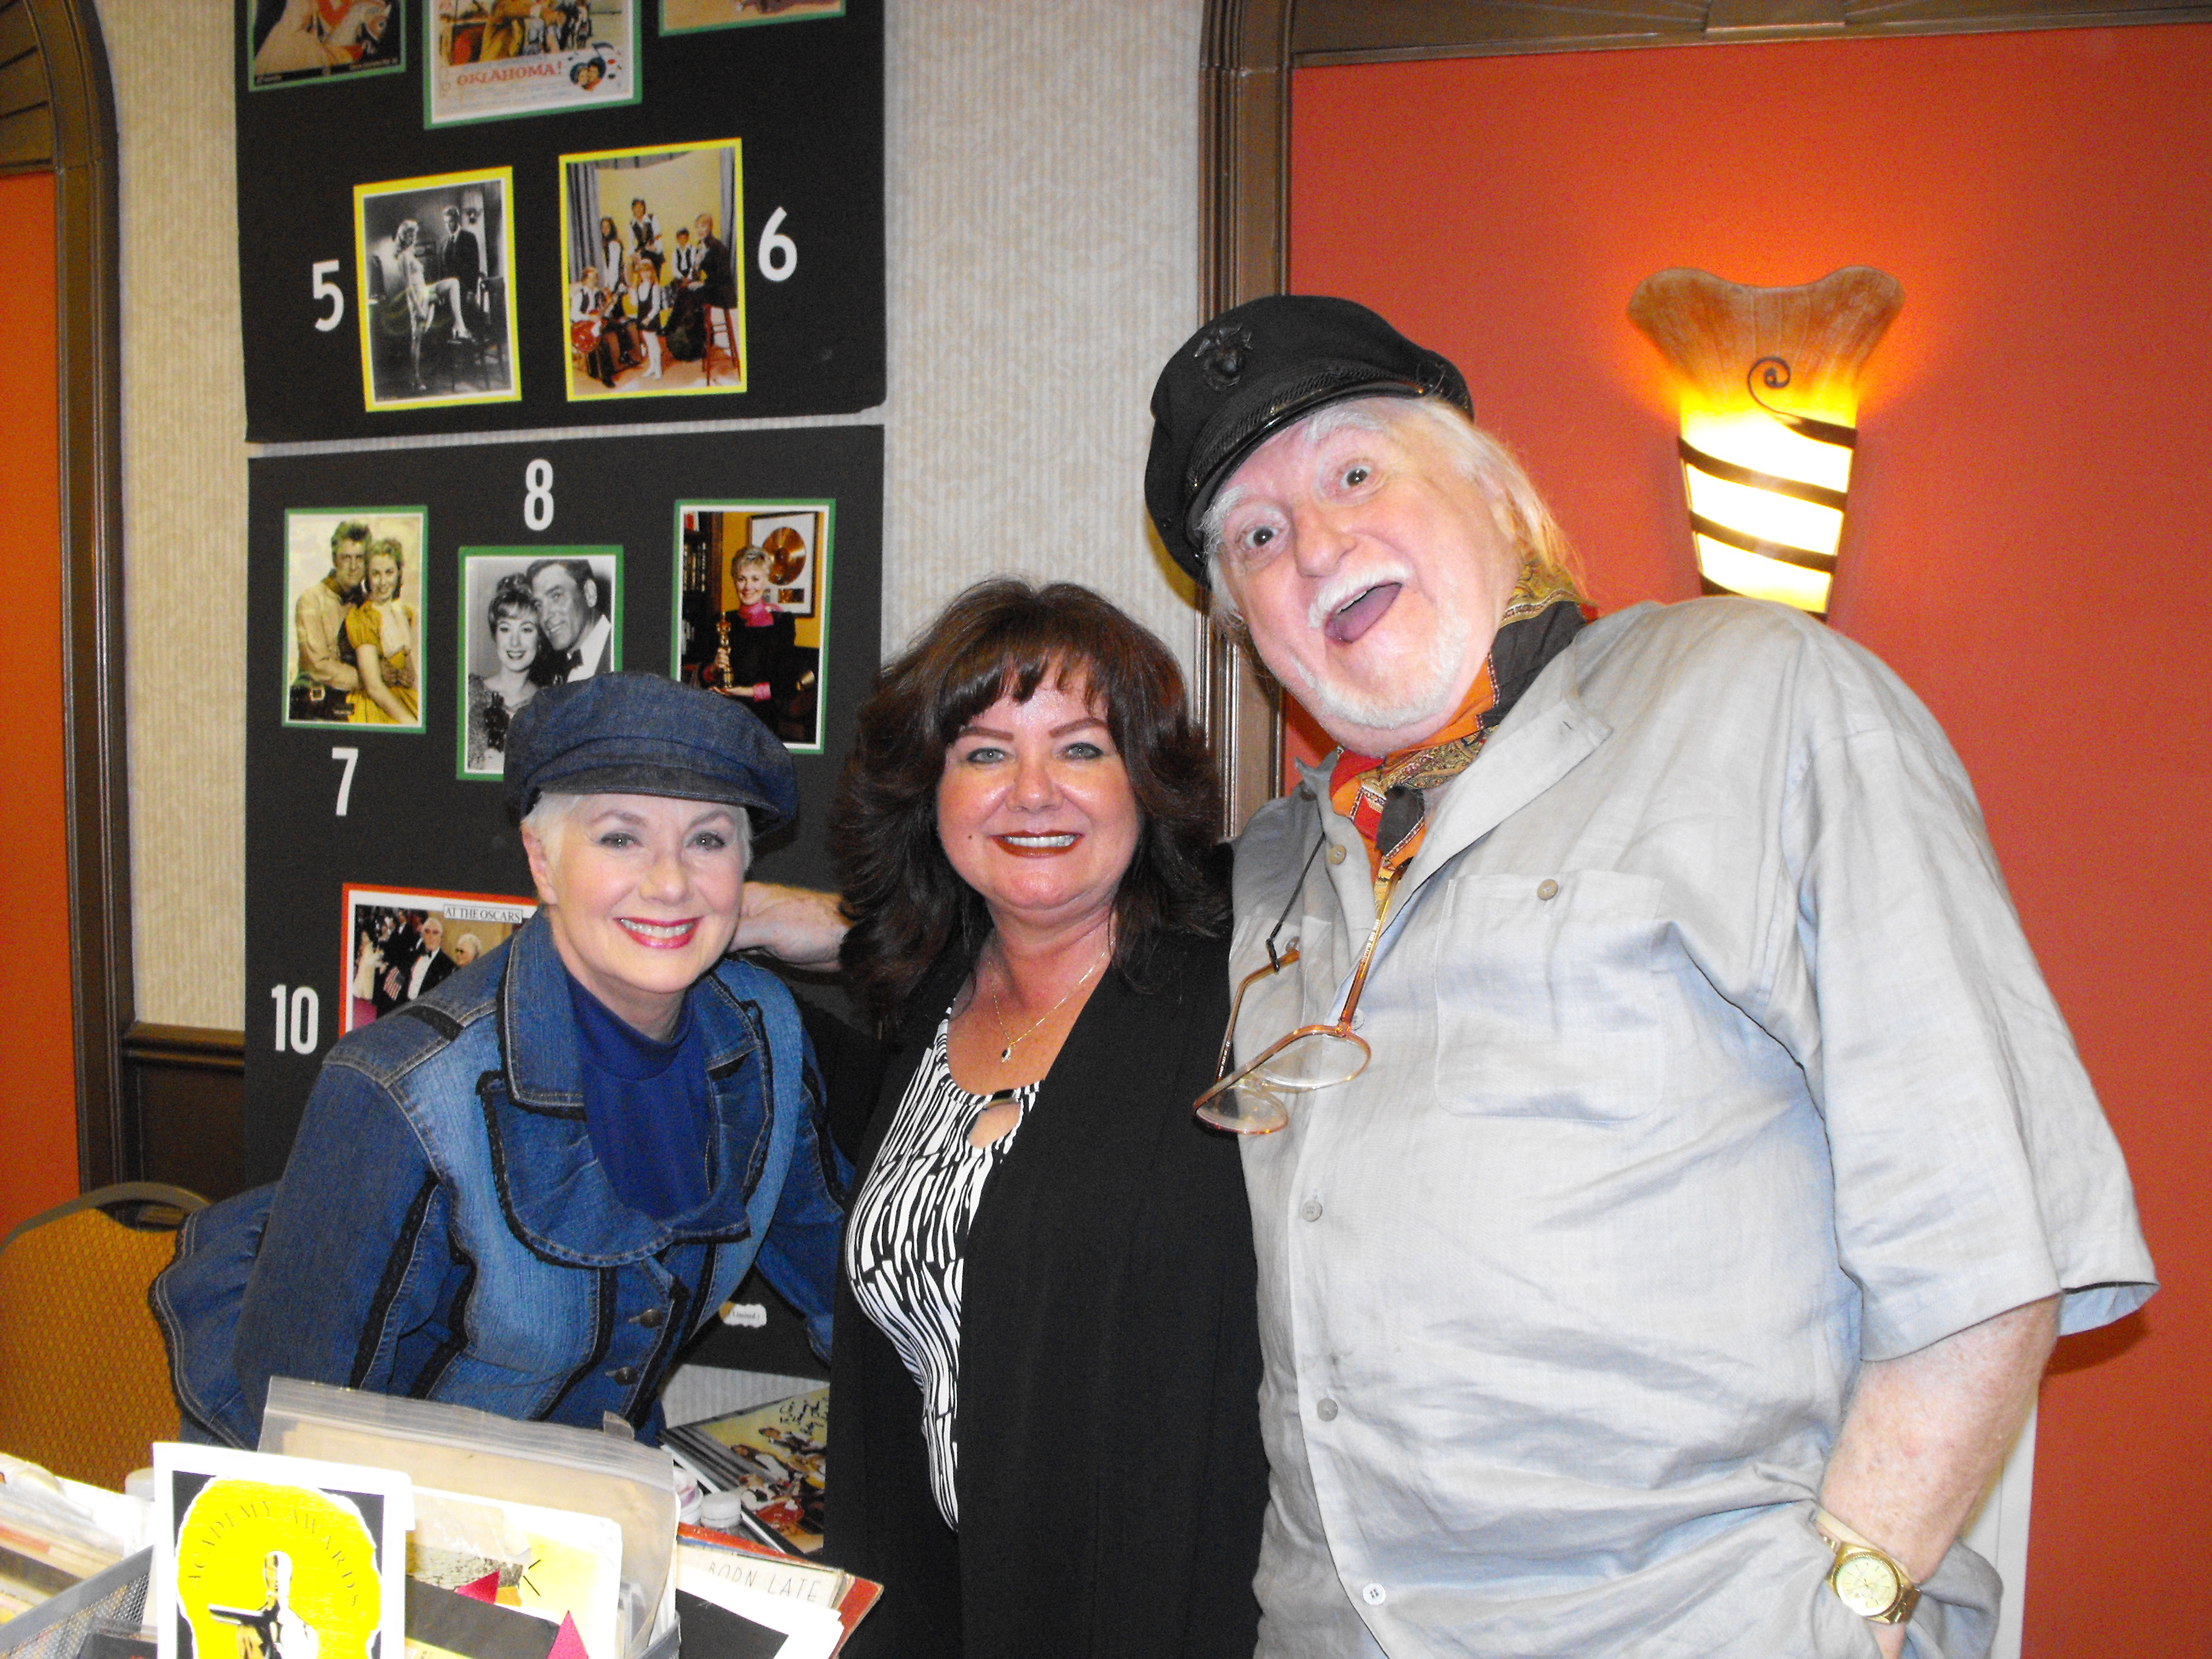 Marty Ingels, Shirley Jones and I